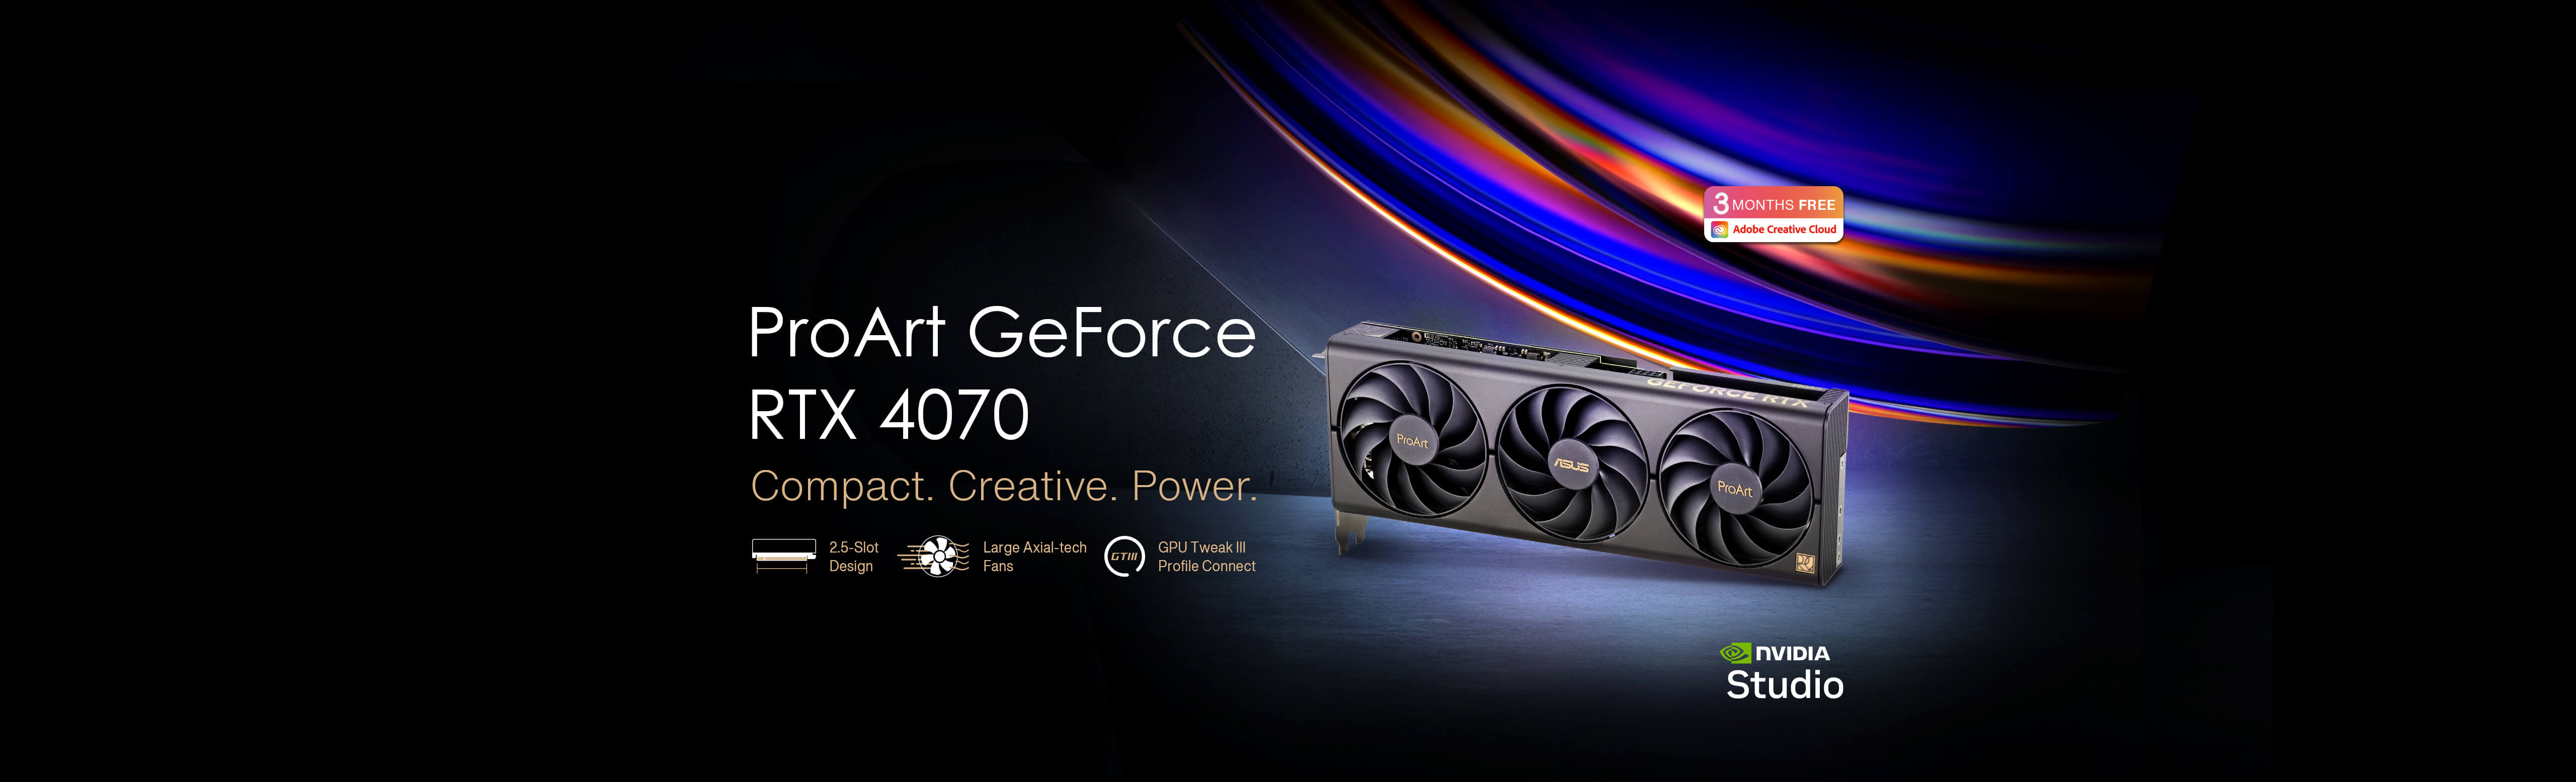 ASUS ProArt GeForce RTX™ 4070 videokaart staand op een ruwe betonnen vloer met Adobe Creative Cloud en NVIDIA Studio's logo's